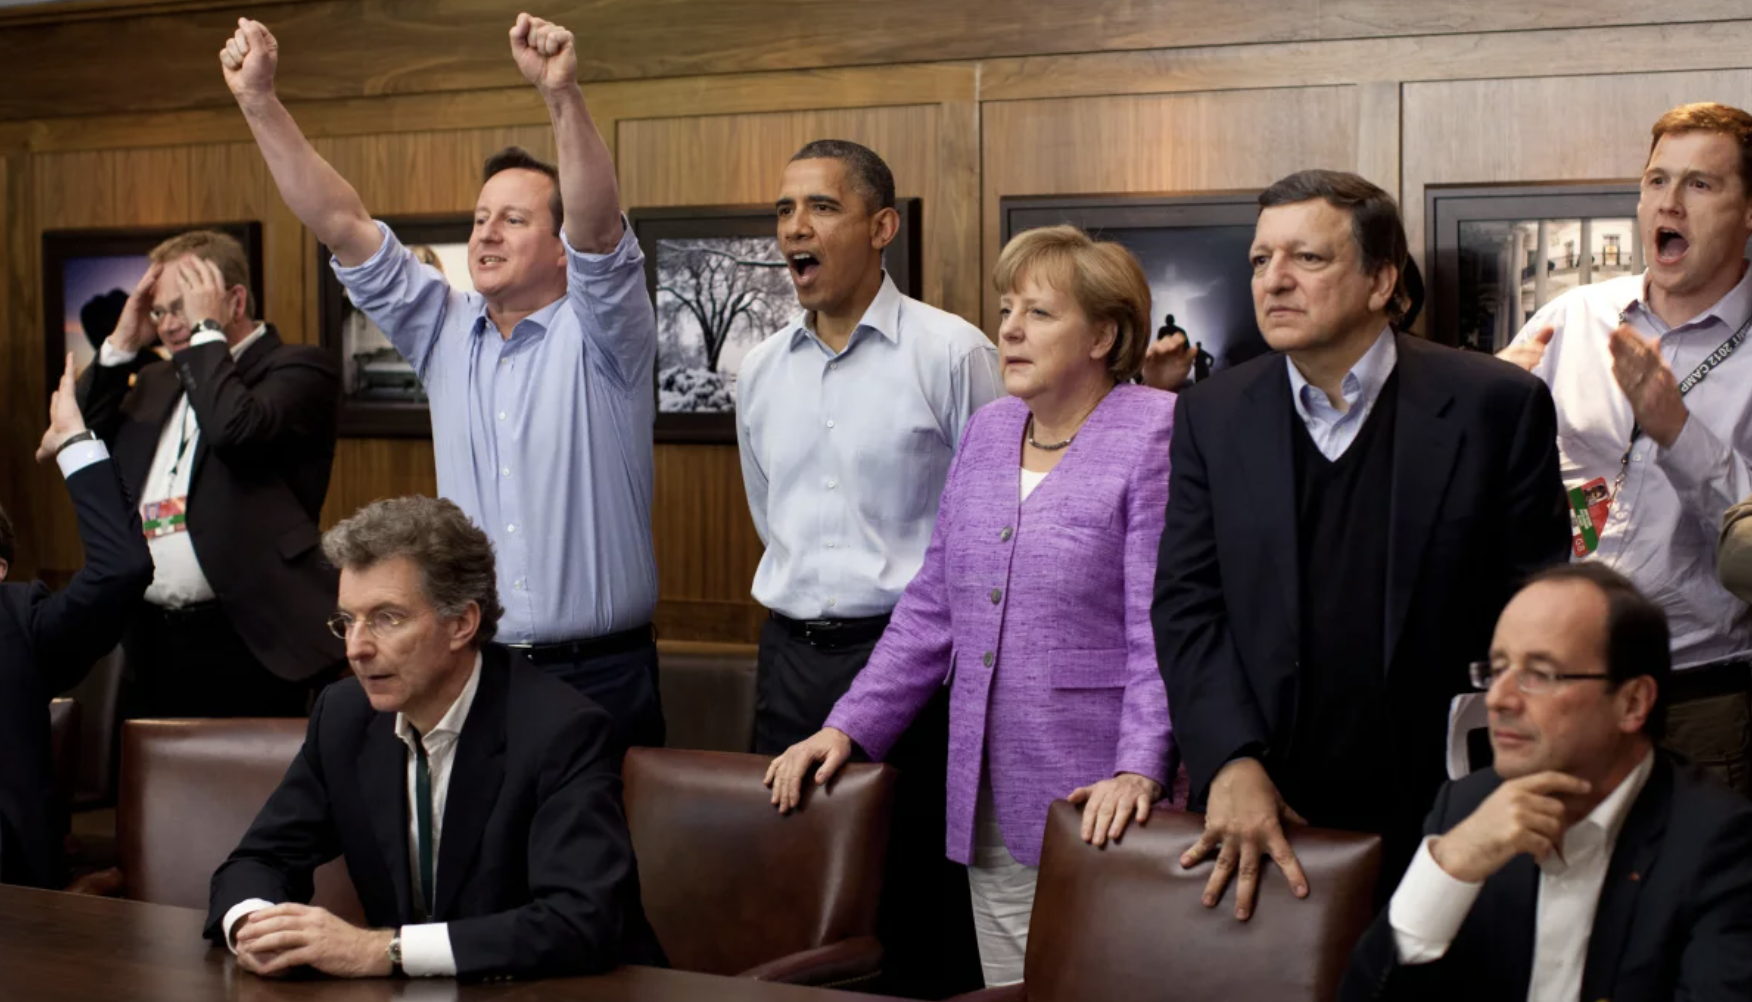 ▲2012年，G8峰会期间，多位领导人在戴维营一起观看球赛